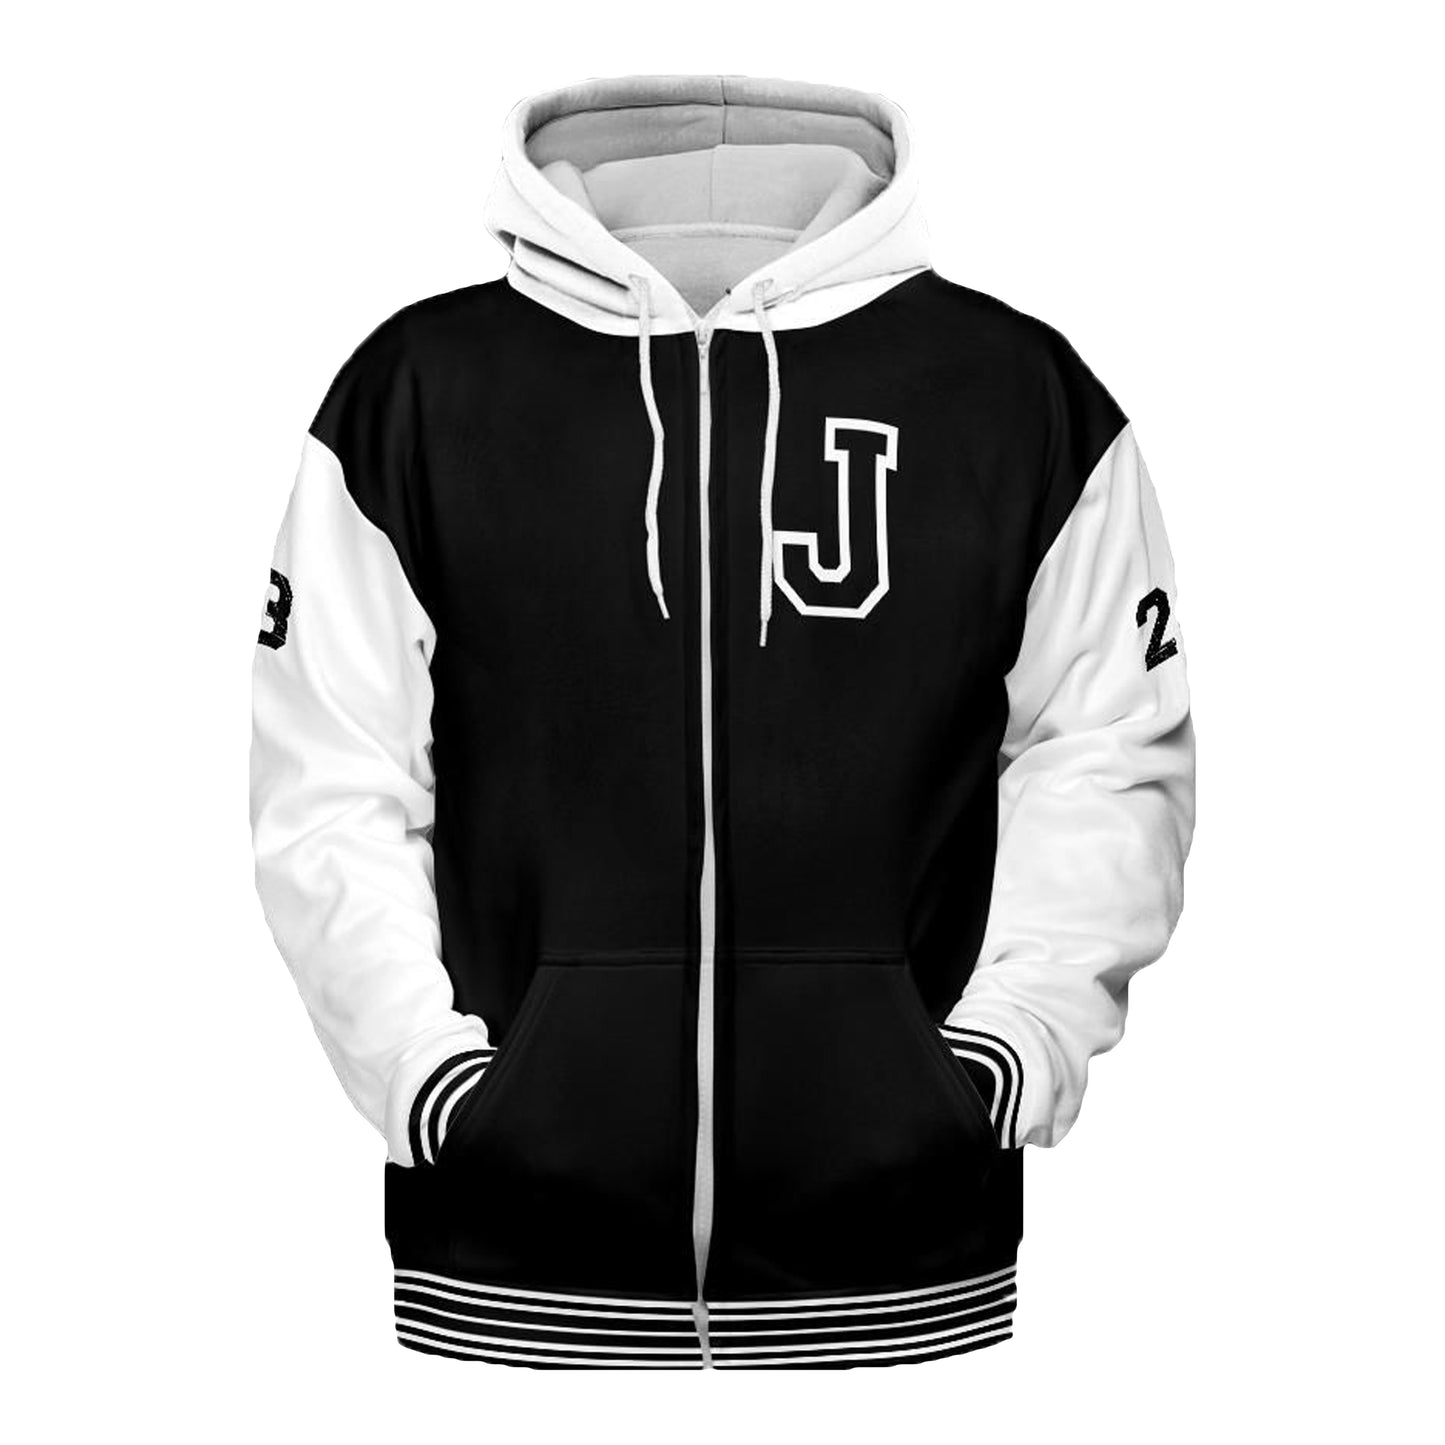 Custom Hoodie Varsity Jacket - Adult Unisex Bomber jacket,Bomber,Varsity,Vintage,Coat,Customized jacket,Wedding,Bride jacket,Team,